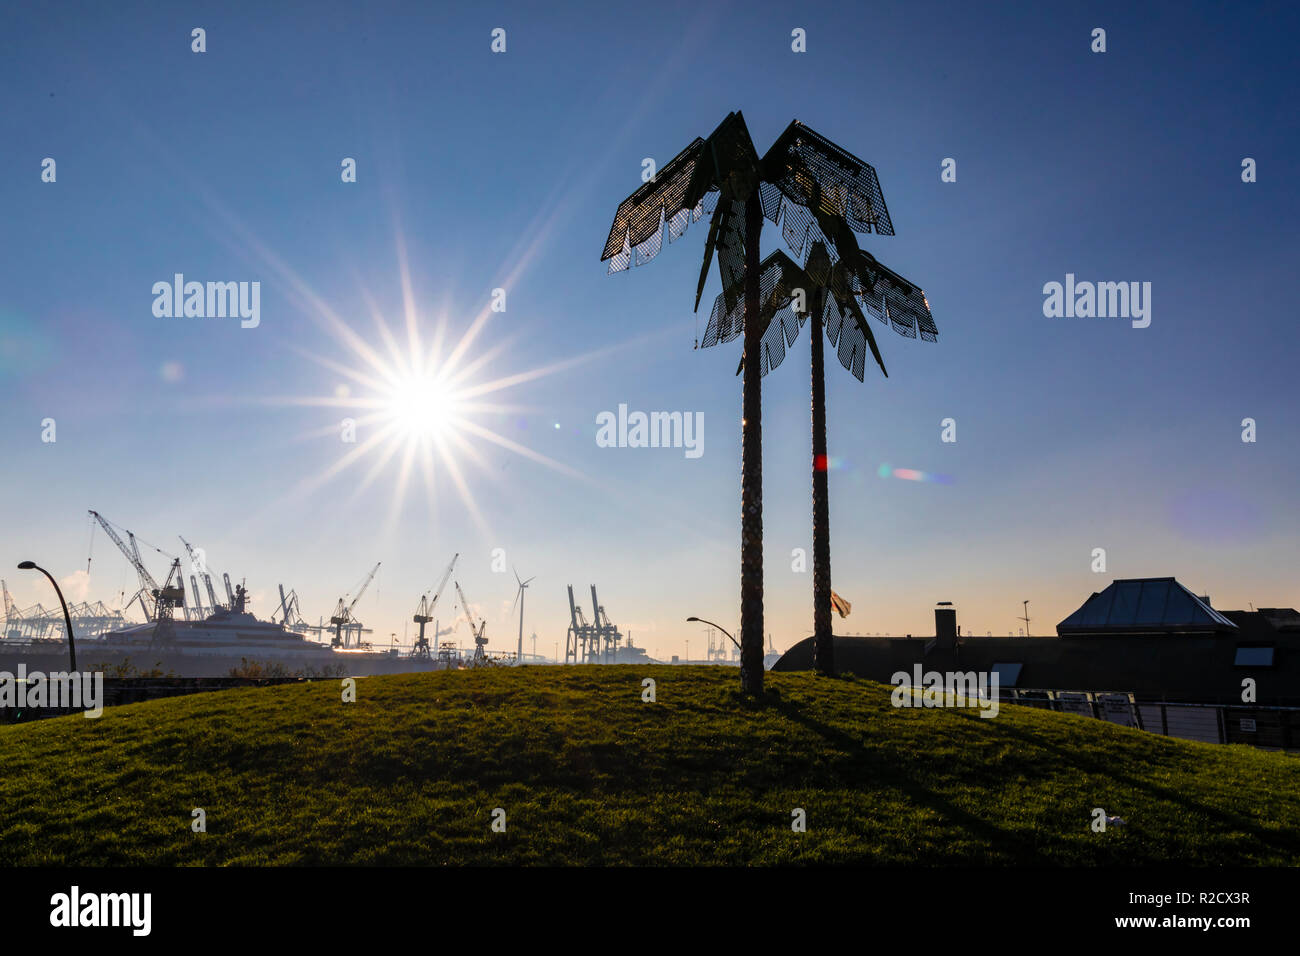 Hambourg, Allemagne - le 17 novembre 2018 : une vue sur des palmiers dans Park Fiction dans le port de Hambourg, en Allemagne lors d'une journée ensoleillée. Banque D'Images